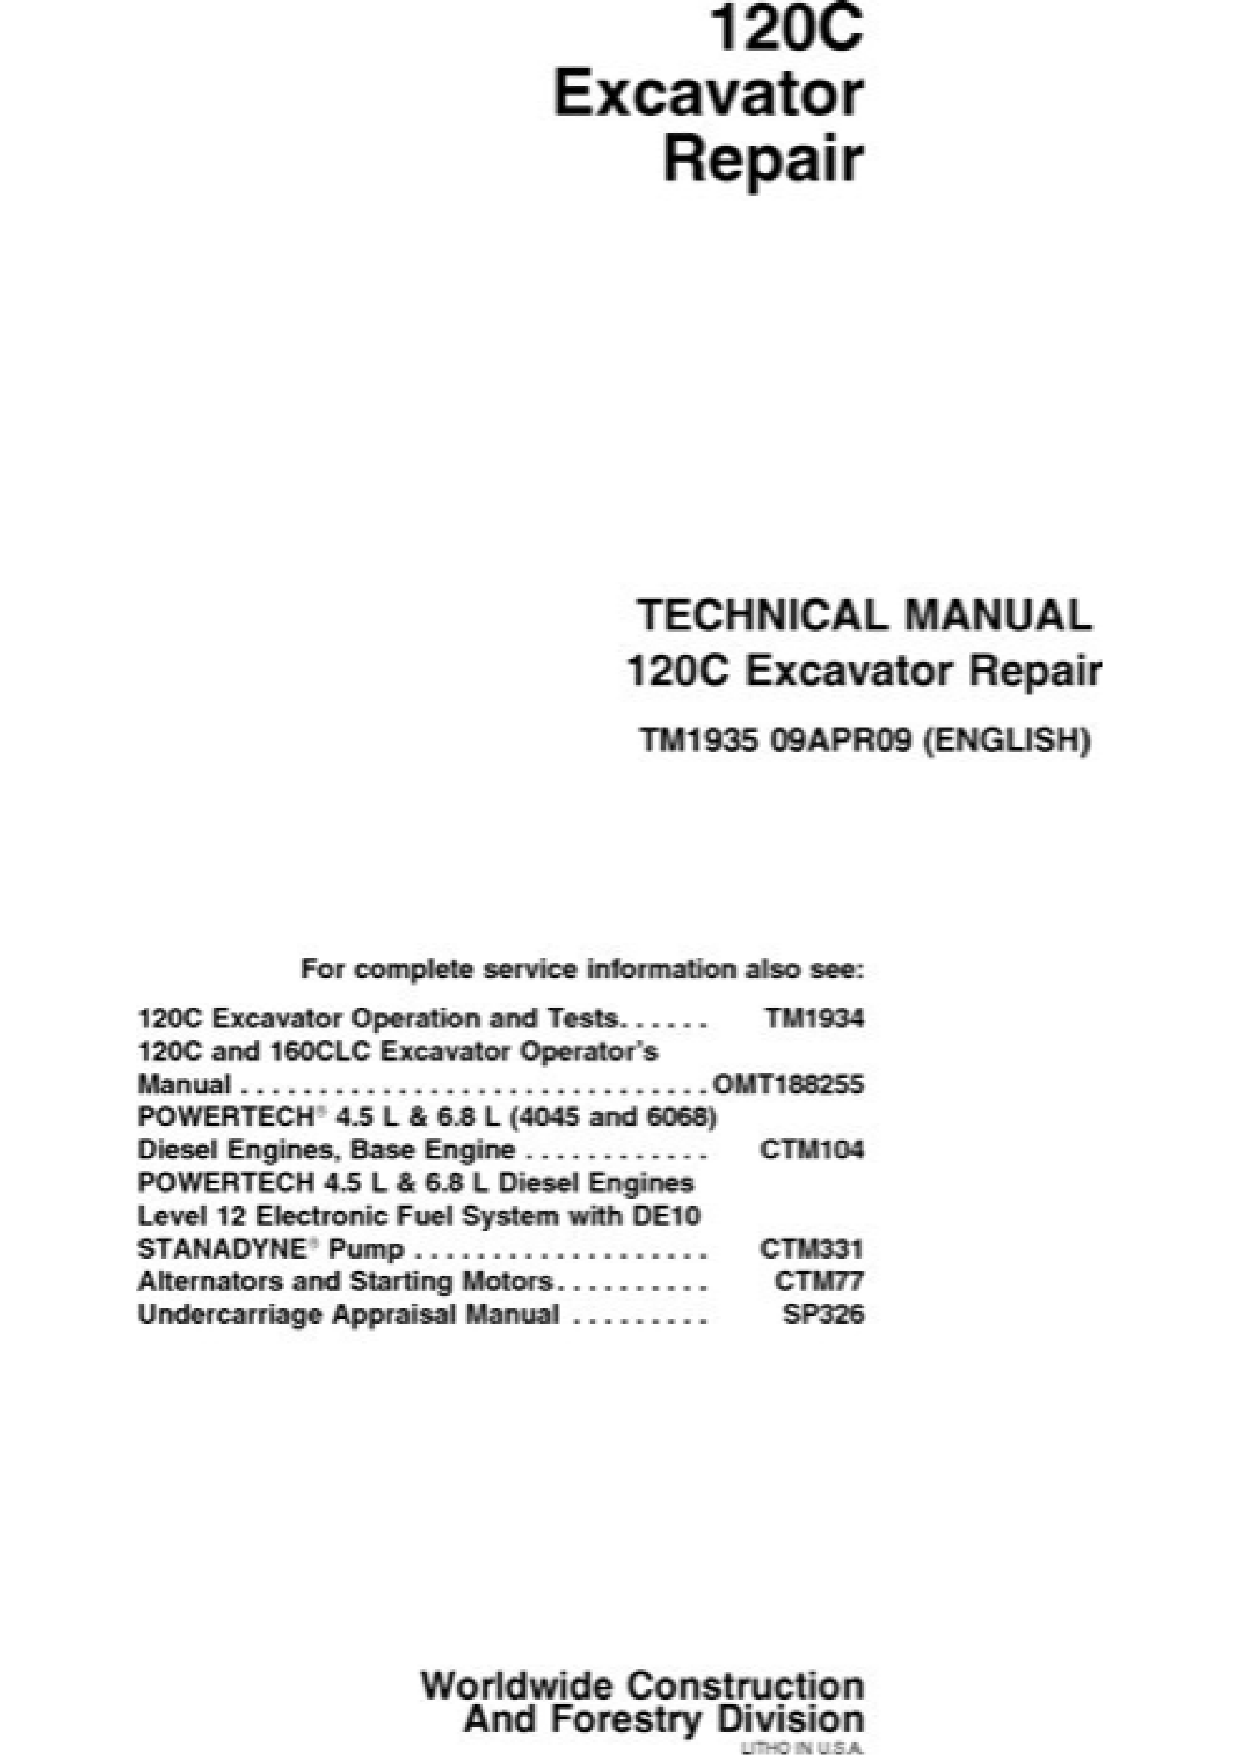 John Deere 120C excavator repair manual  Preview image 1